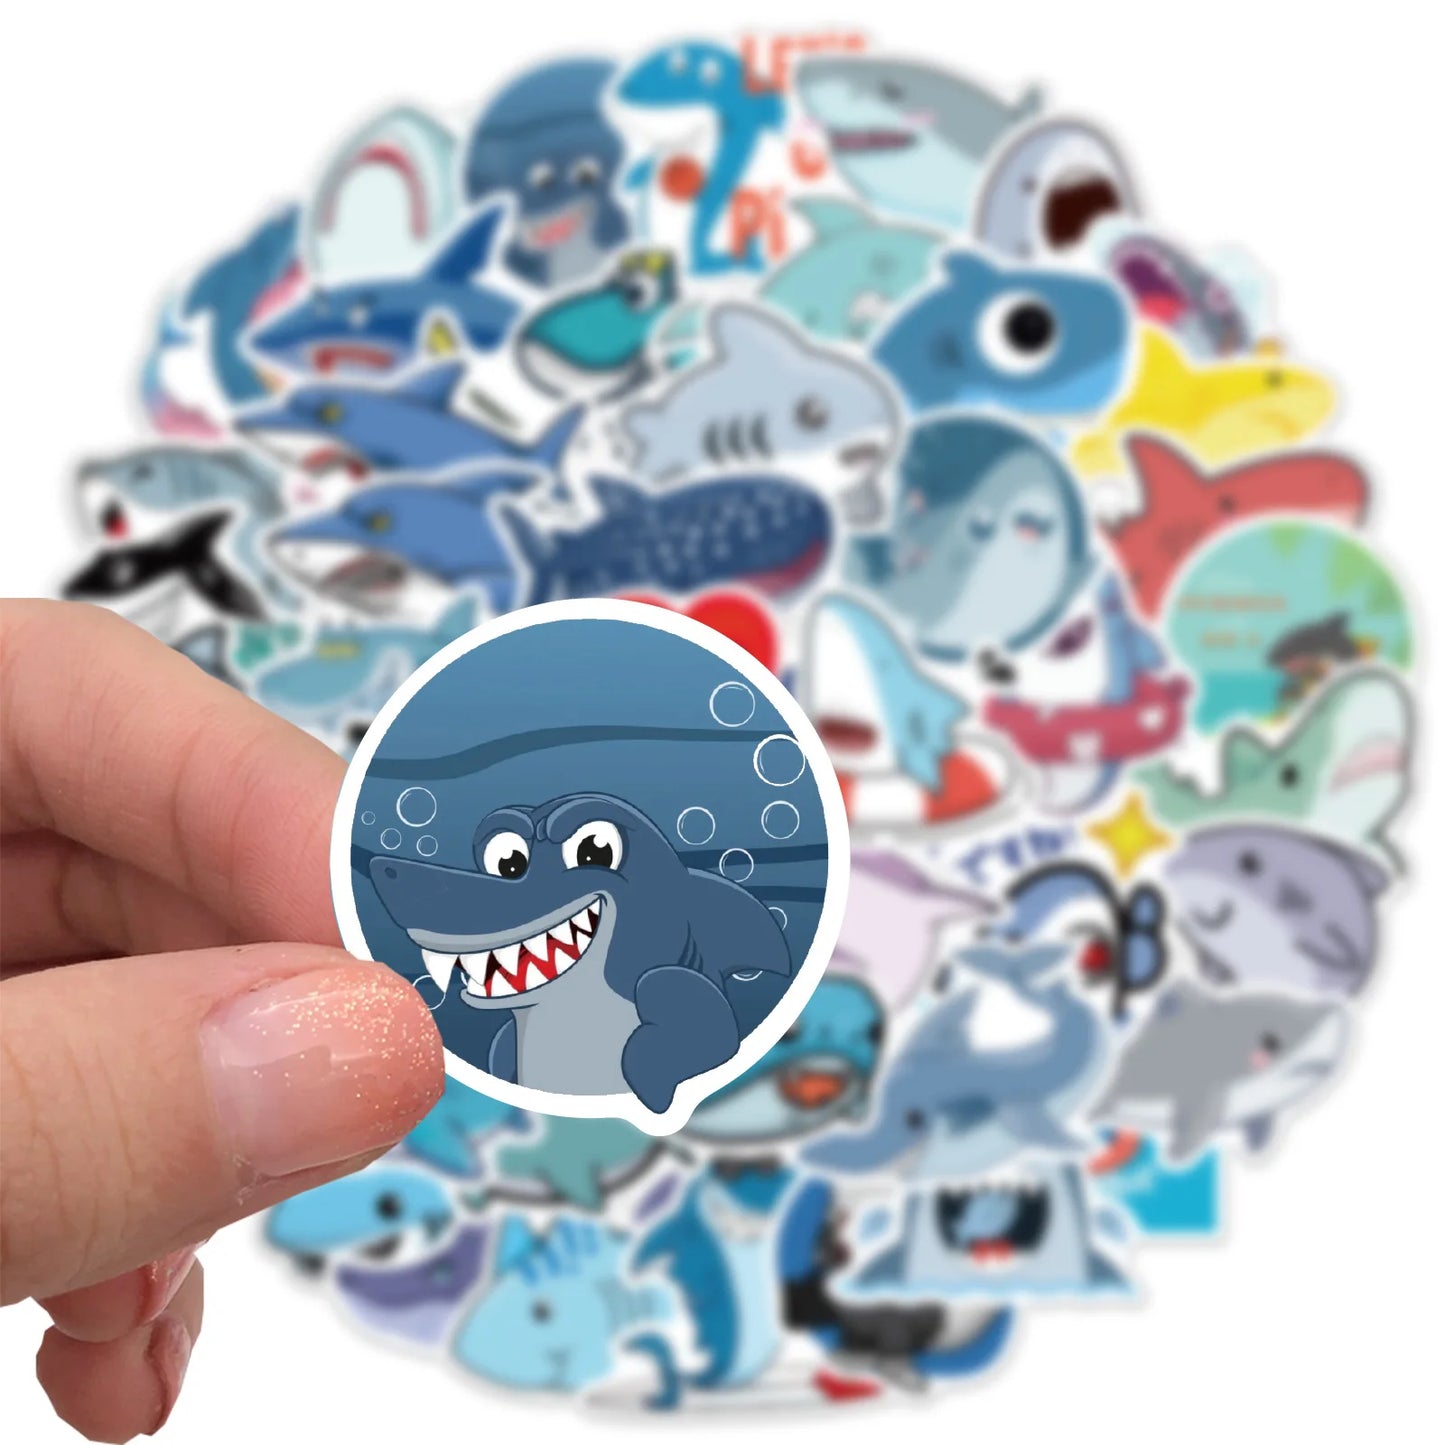 50Pcs Shark Stickers，Ocean Shark Waterproof Vinyl Stickers and Decals